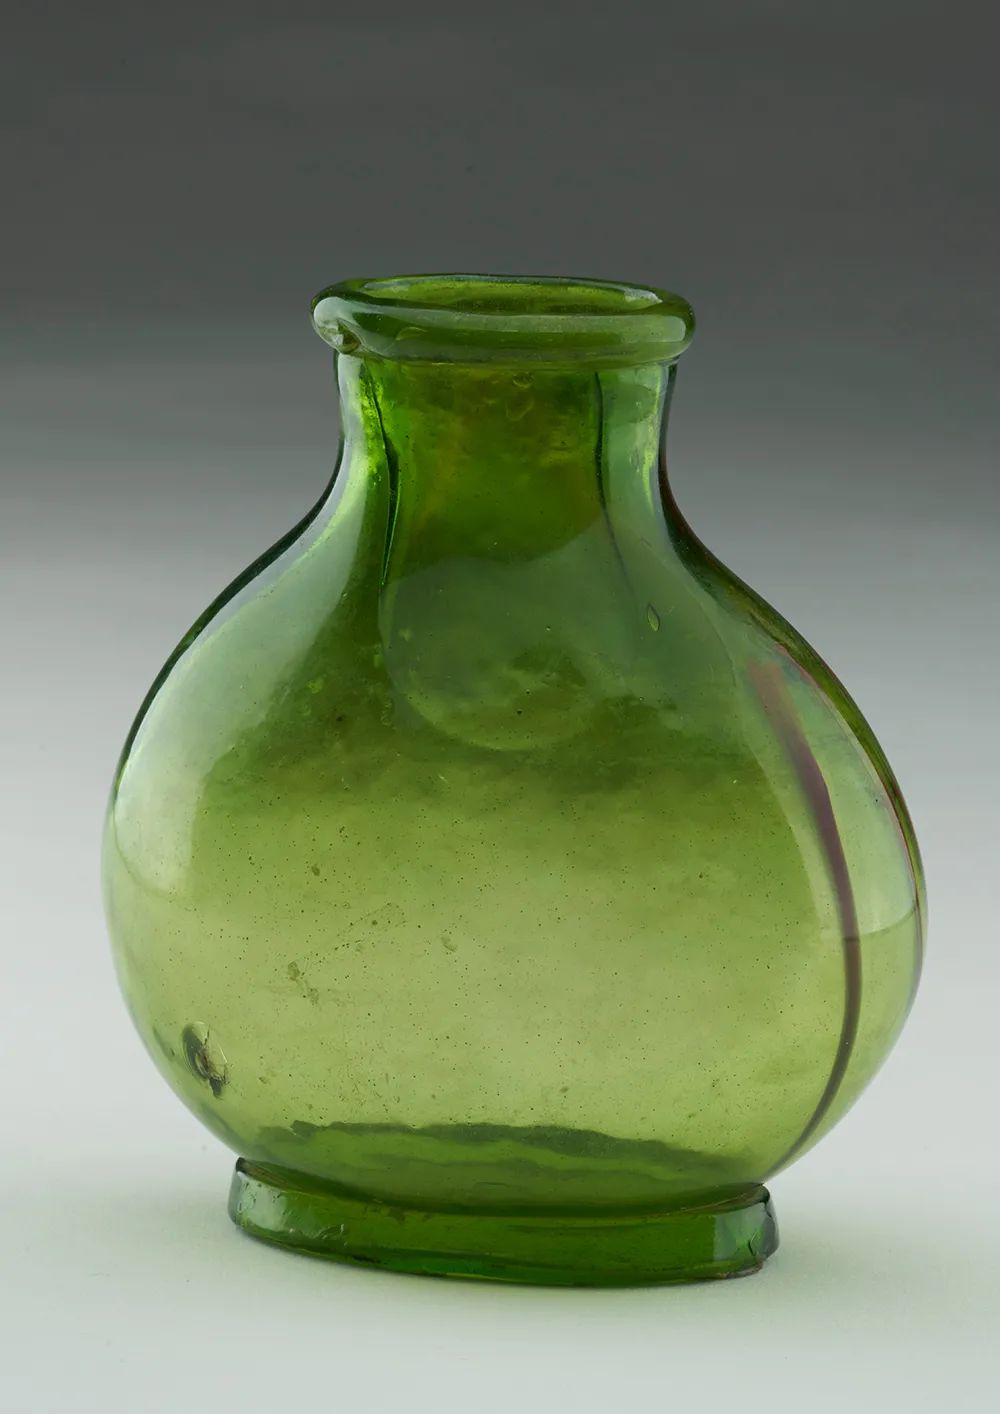 玻璃瓶，隋代，541-604 年，西安李静训墓出土，中国国家博物馆藏